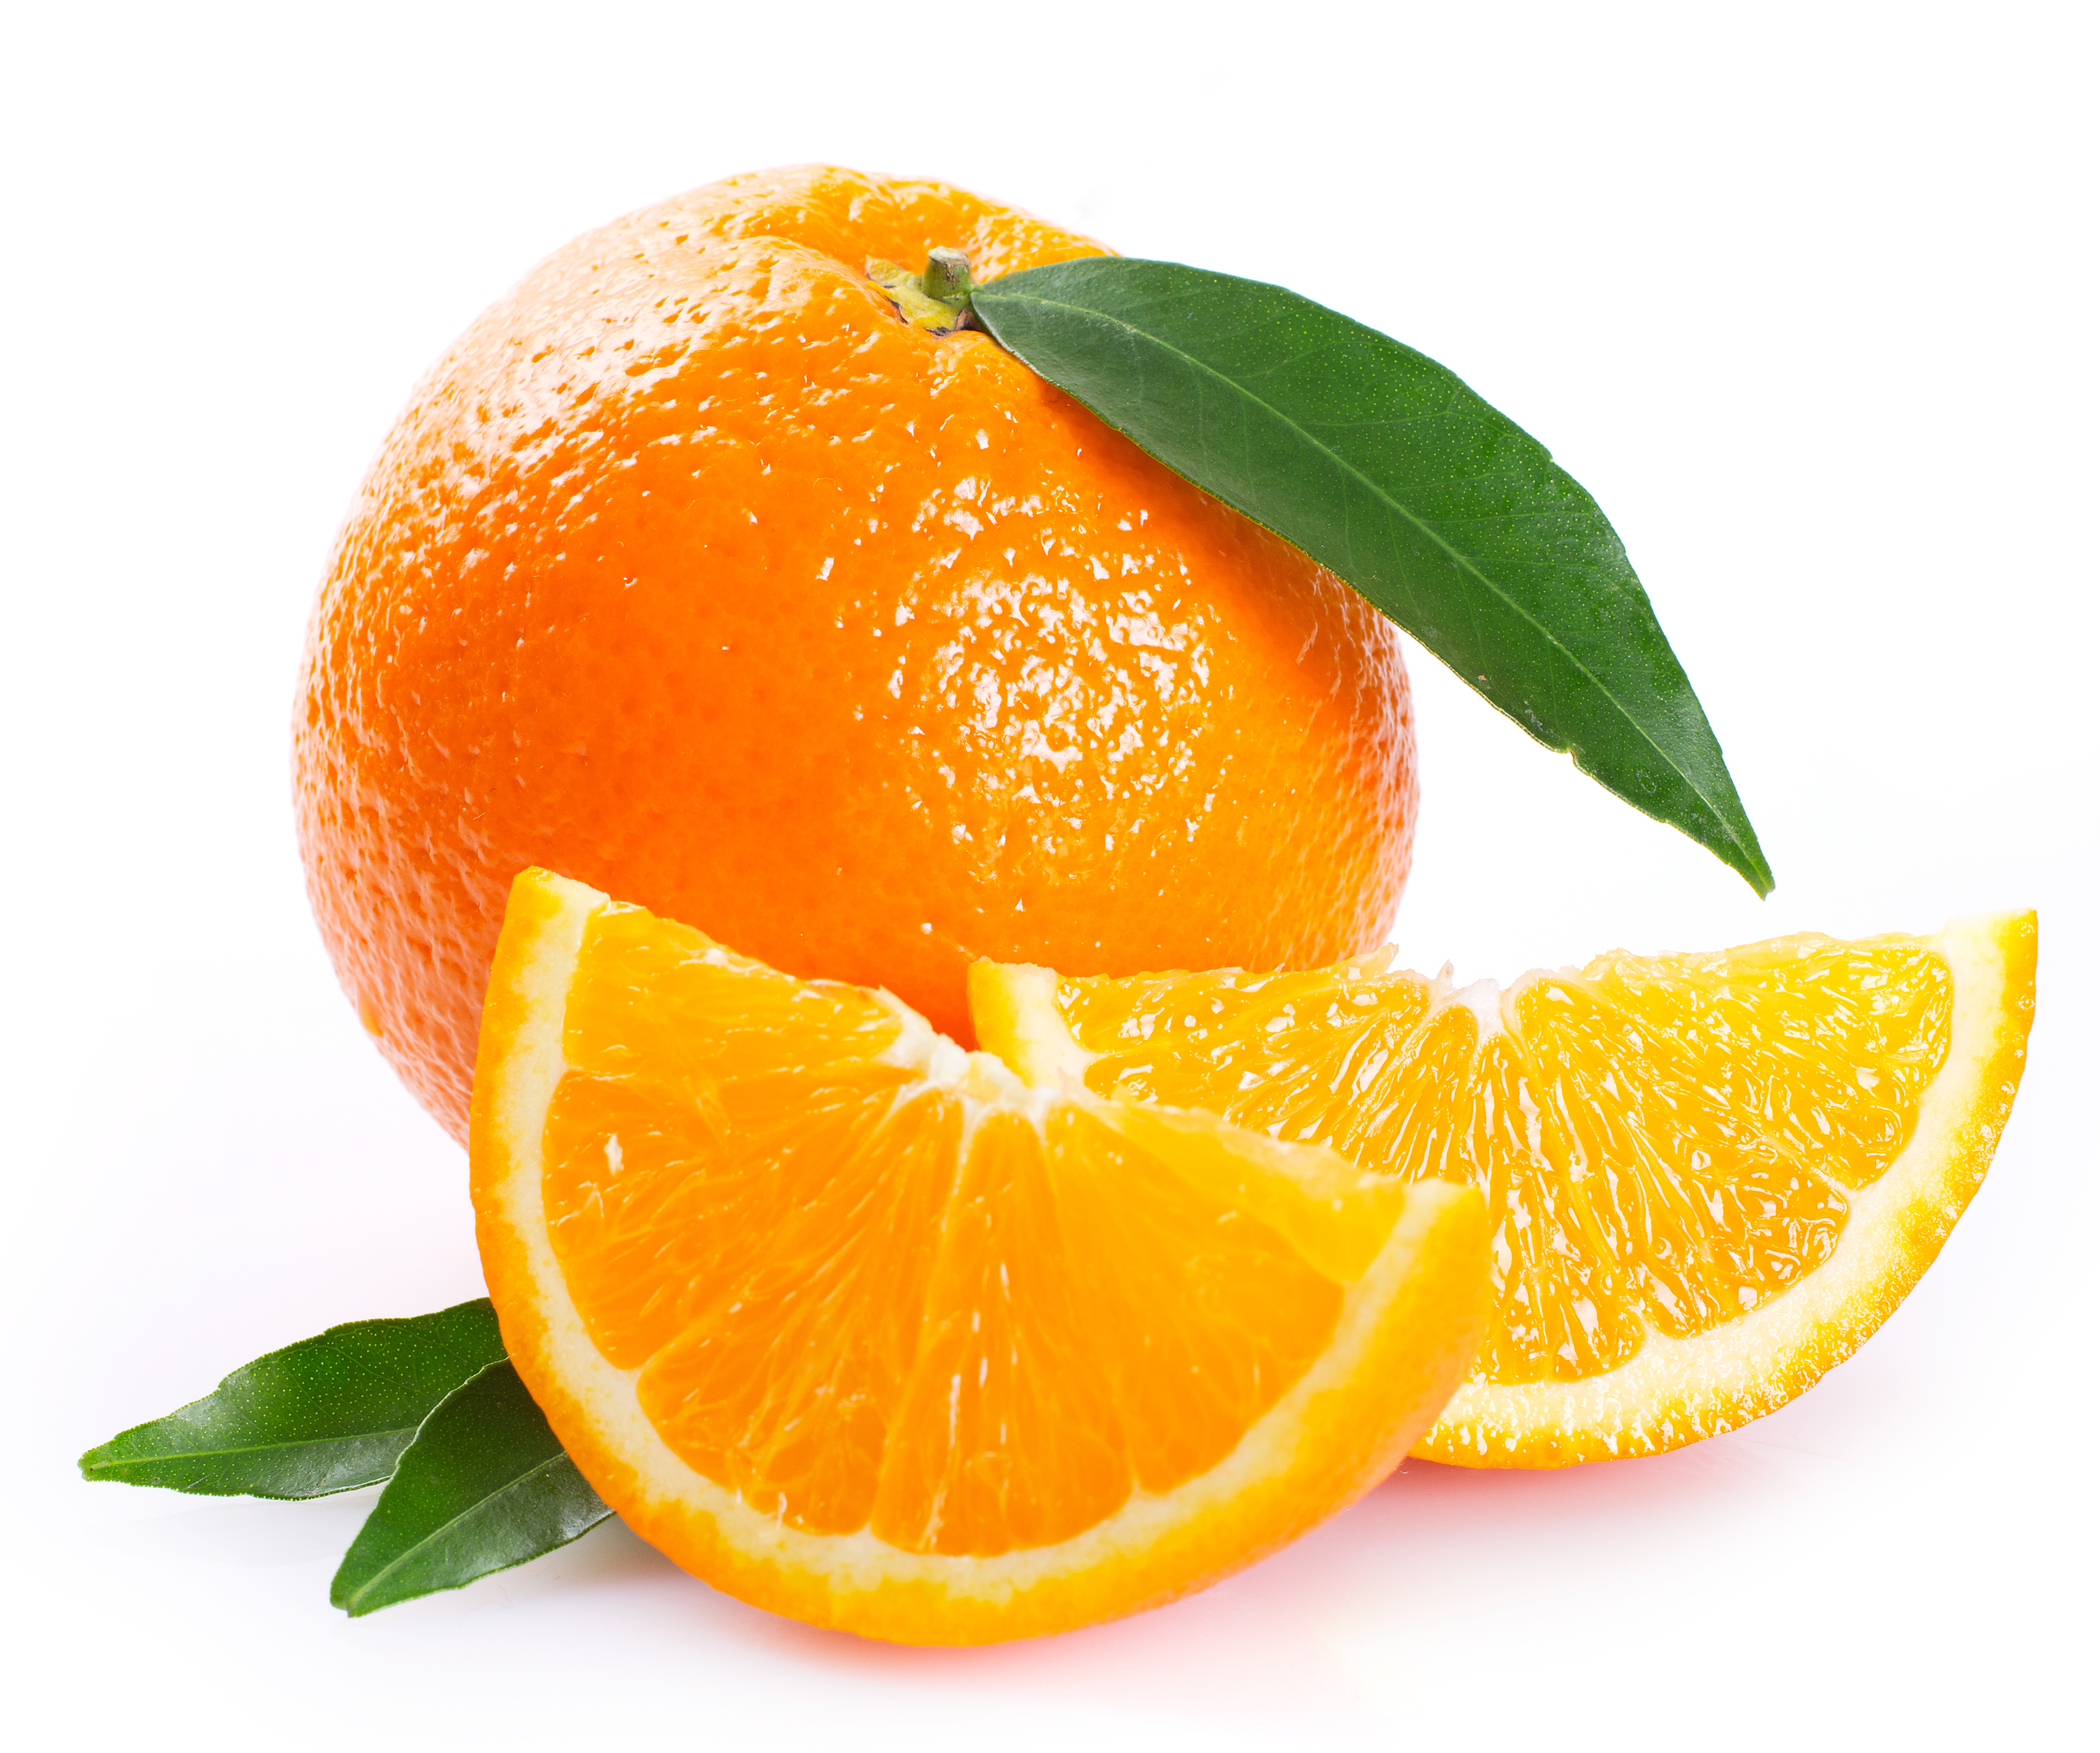 Appelsin er selve påskefrukten og kan gjerne få plass i påskeegget. Bilde: AdobeStock/valery121283. 